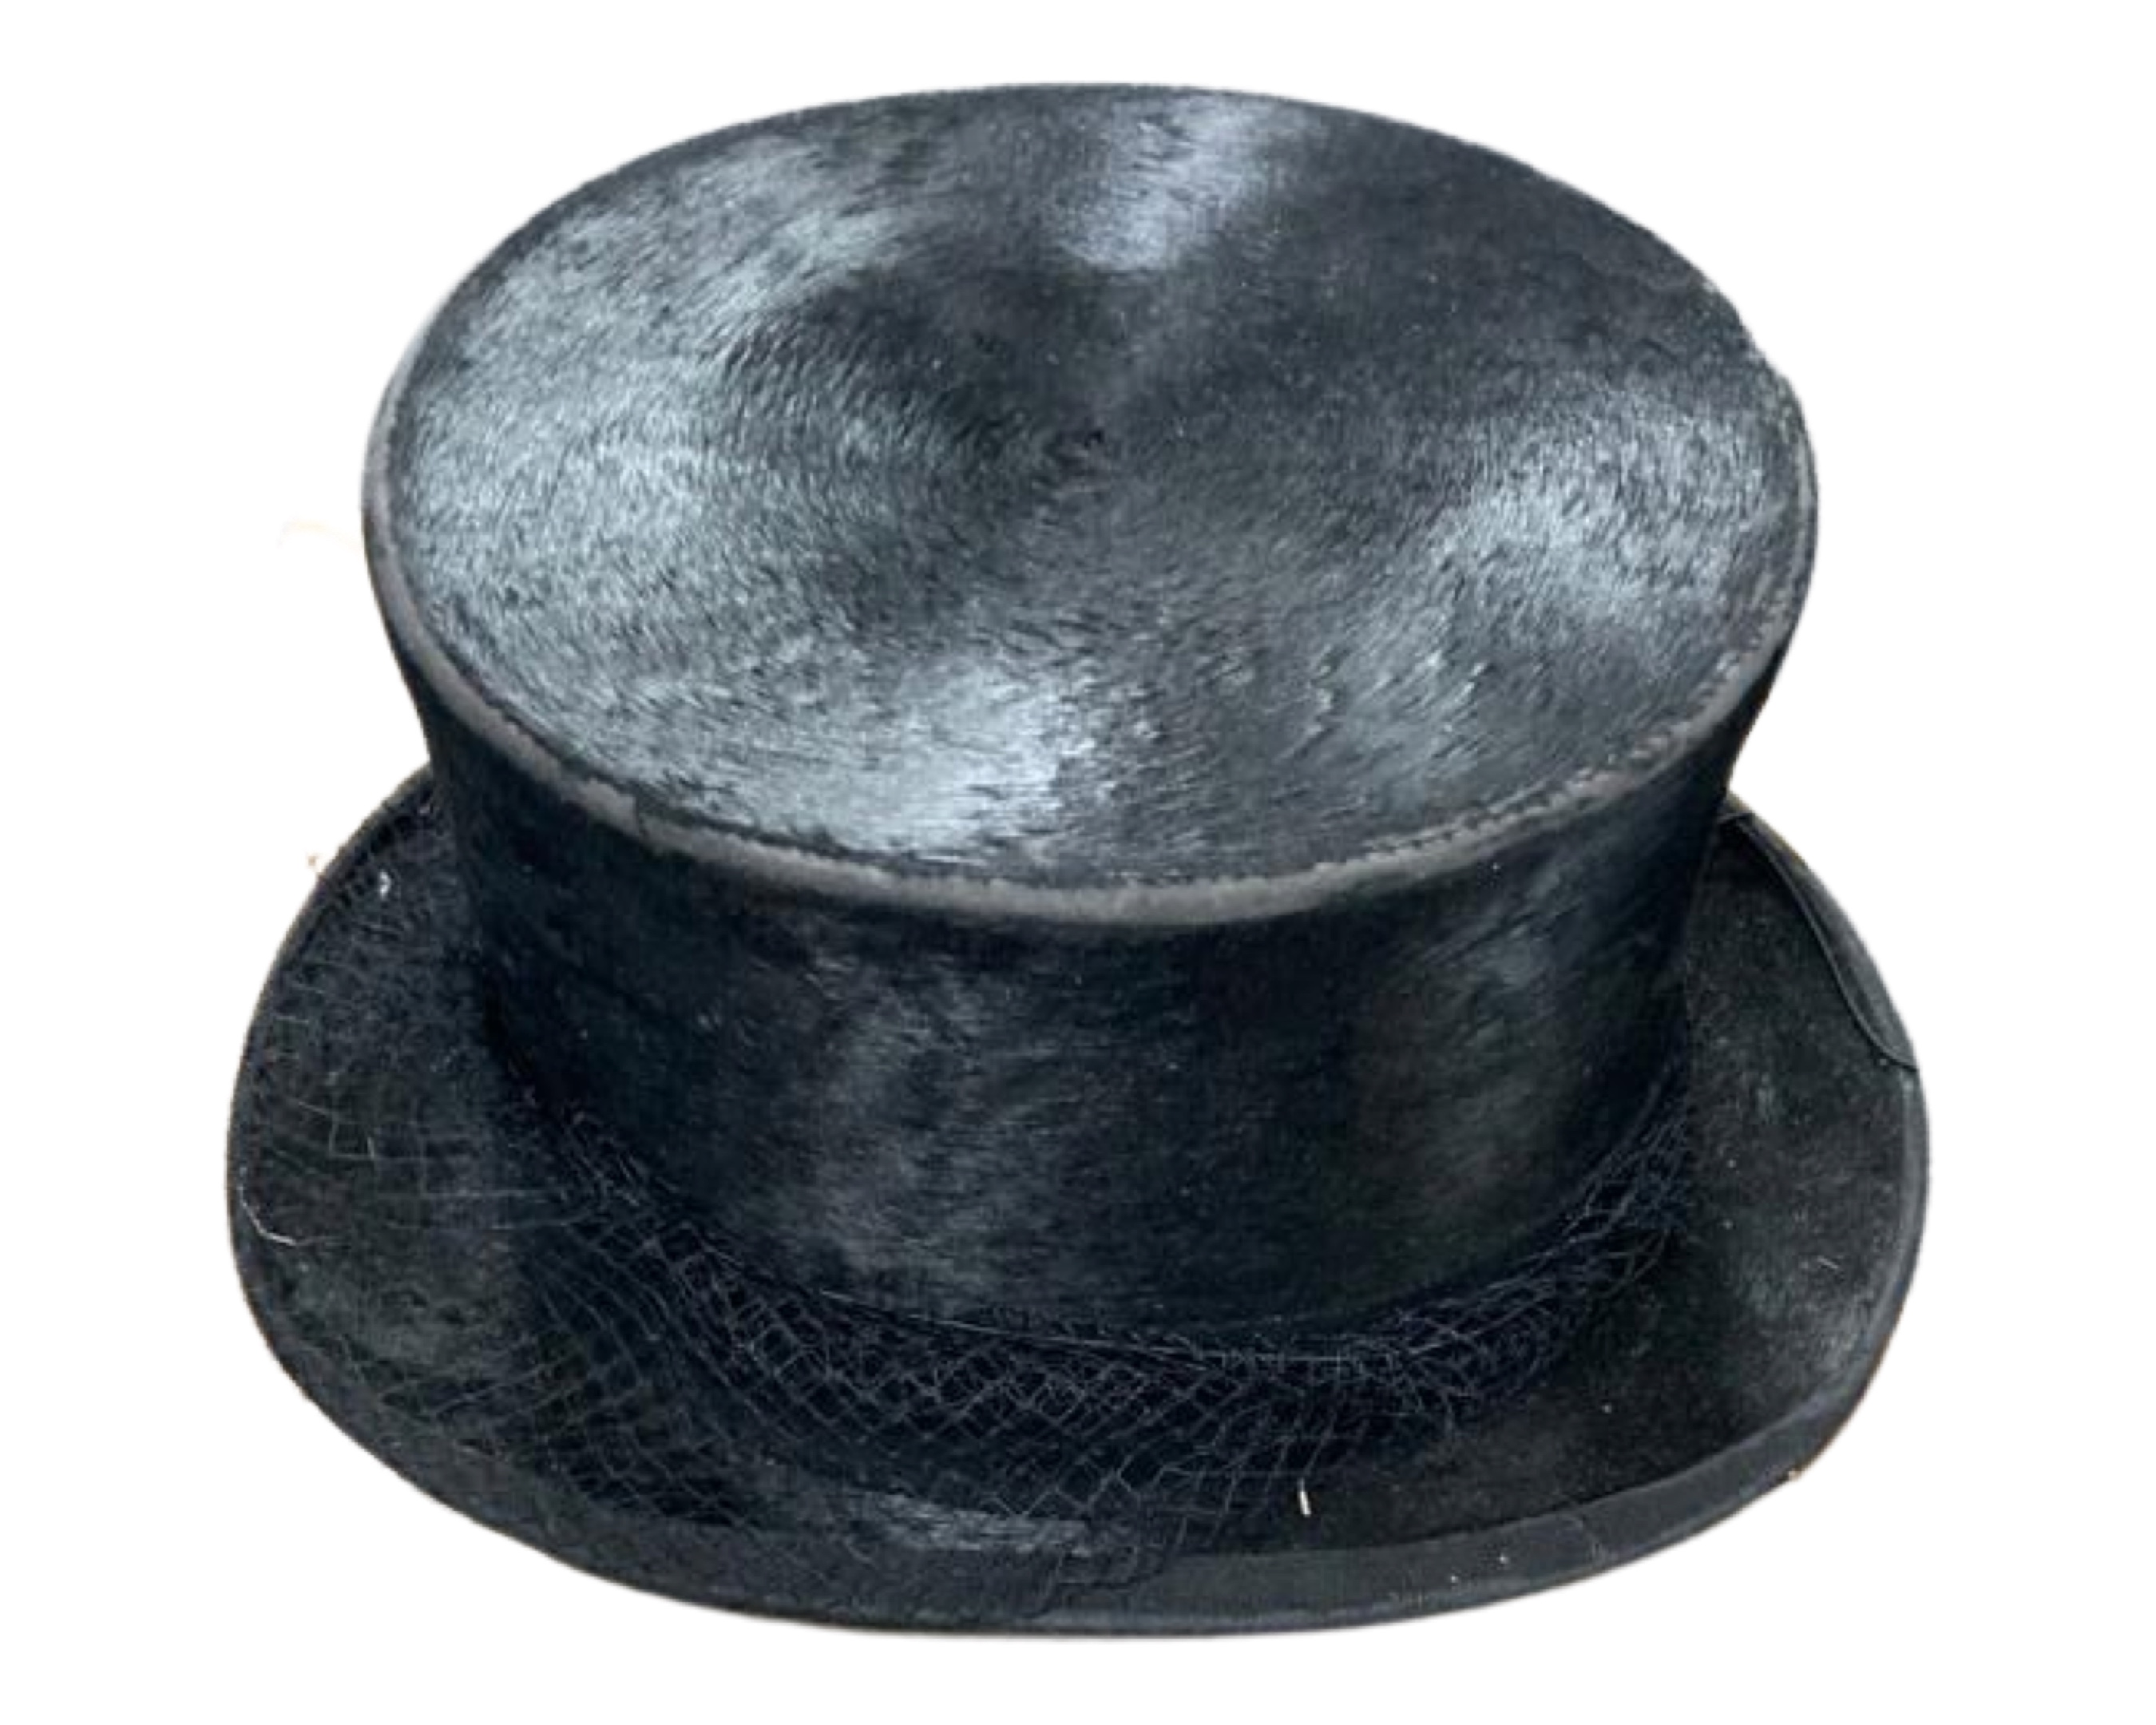 An antique silk top hat by Herbert Johnson of New Bond Street, London.